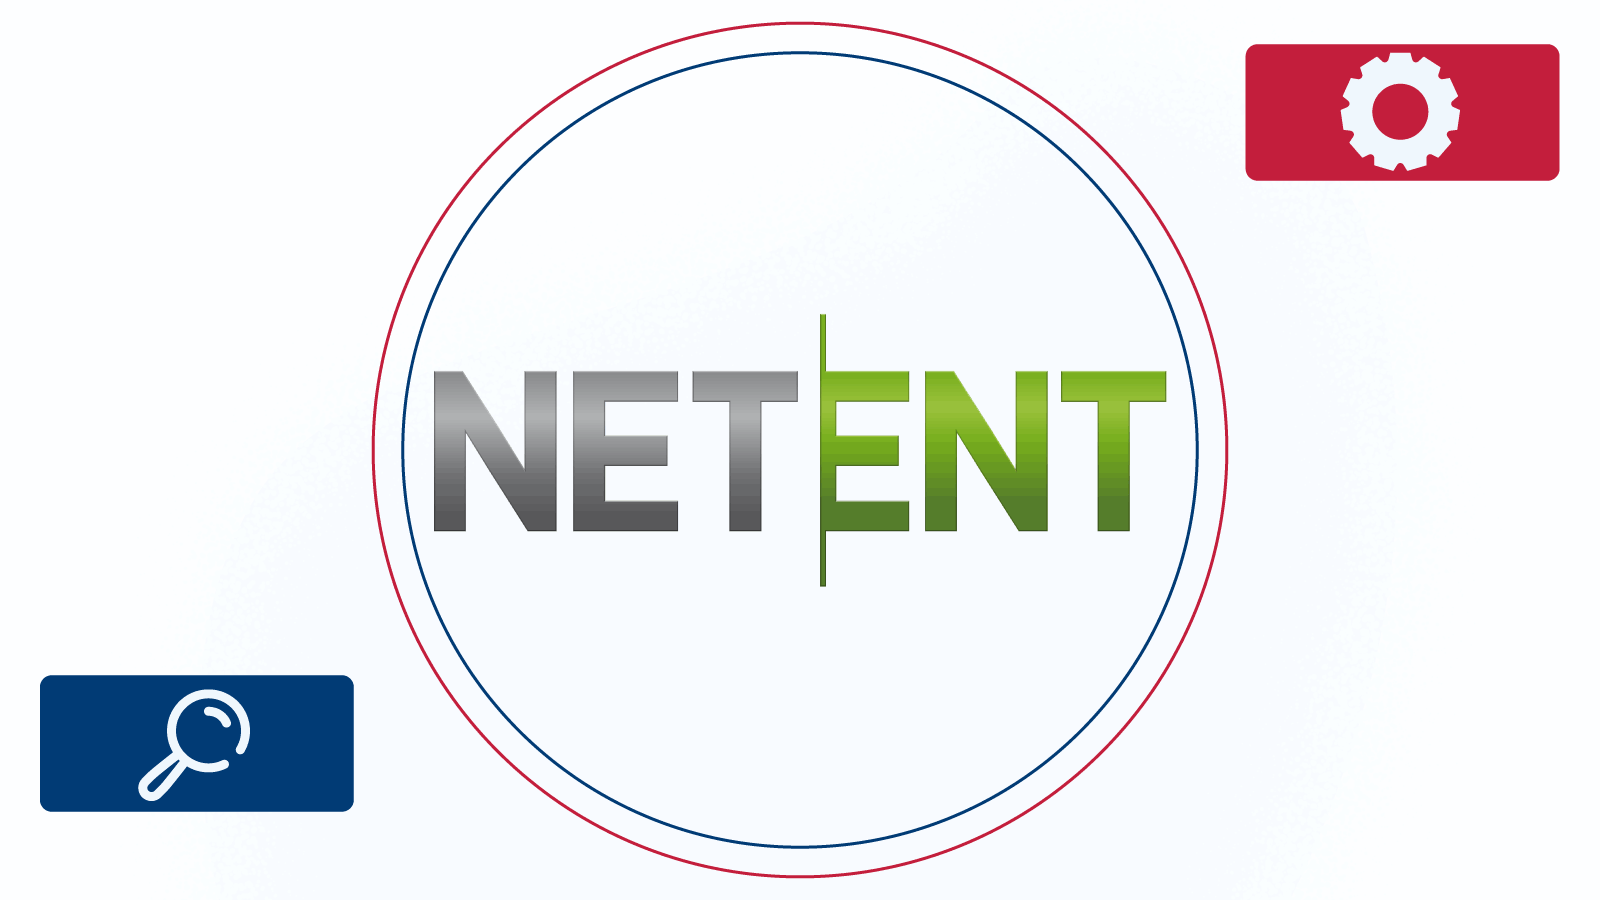 NetEnt développe plusieurs types de jeux en direct